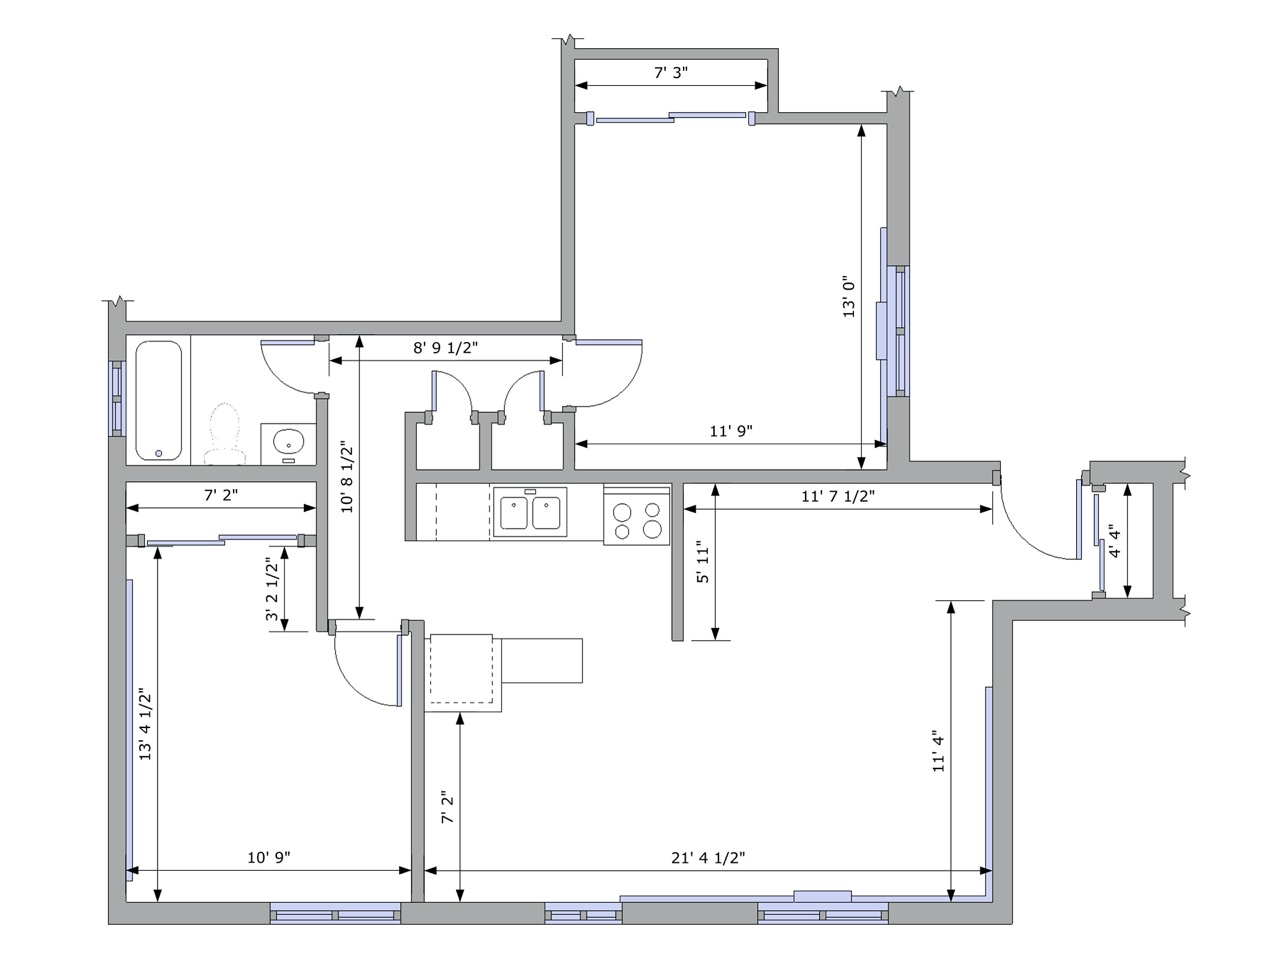 Da Vinci II floor plan